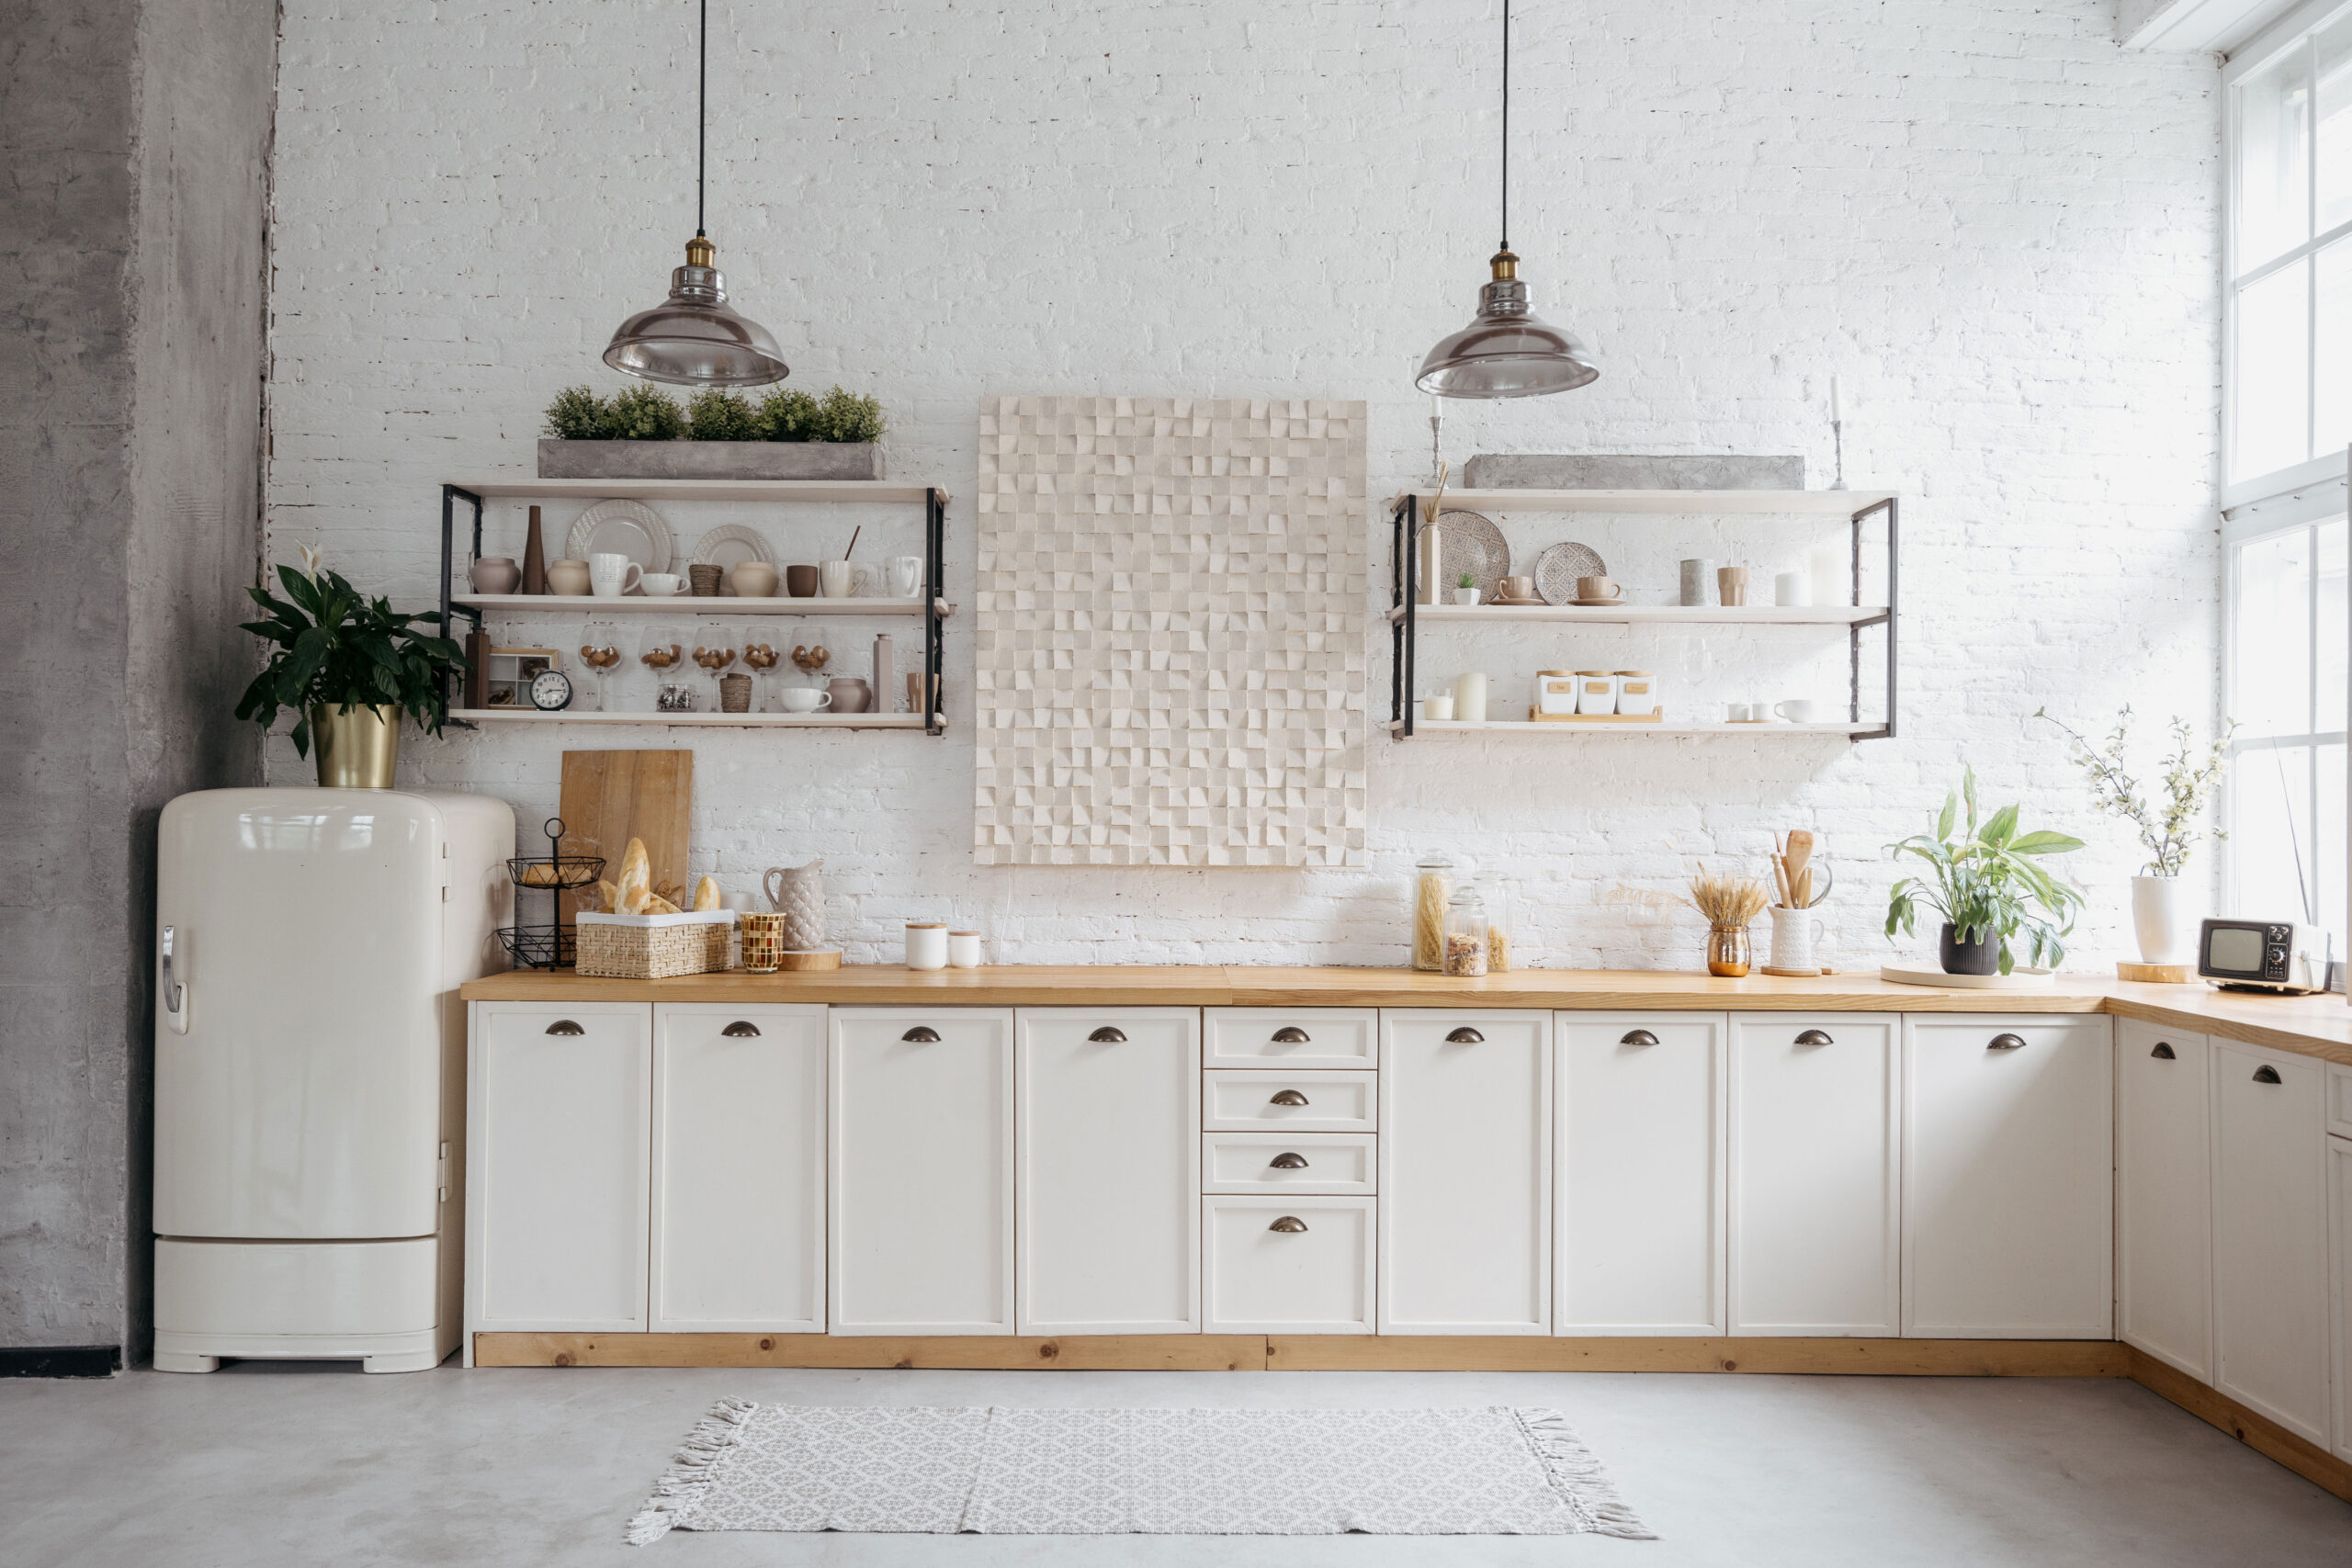 Η κουζίνα είναι σχεδιασμένη σε κλασικό στιλ με μοντέρνες πινελιές, αποπνέοντας ταυτόχρονα αίσθηση ζεστασιάς και κομψότητας. Τα κυρίαρχα χρώματα σε αυτό το χώρο είναι το λευκό και το κρεμ, δημιουργώντας έναν φωτεινό και αεράτο χώρο.